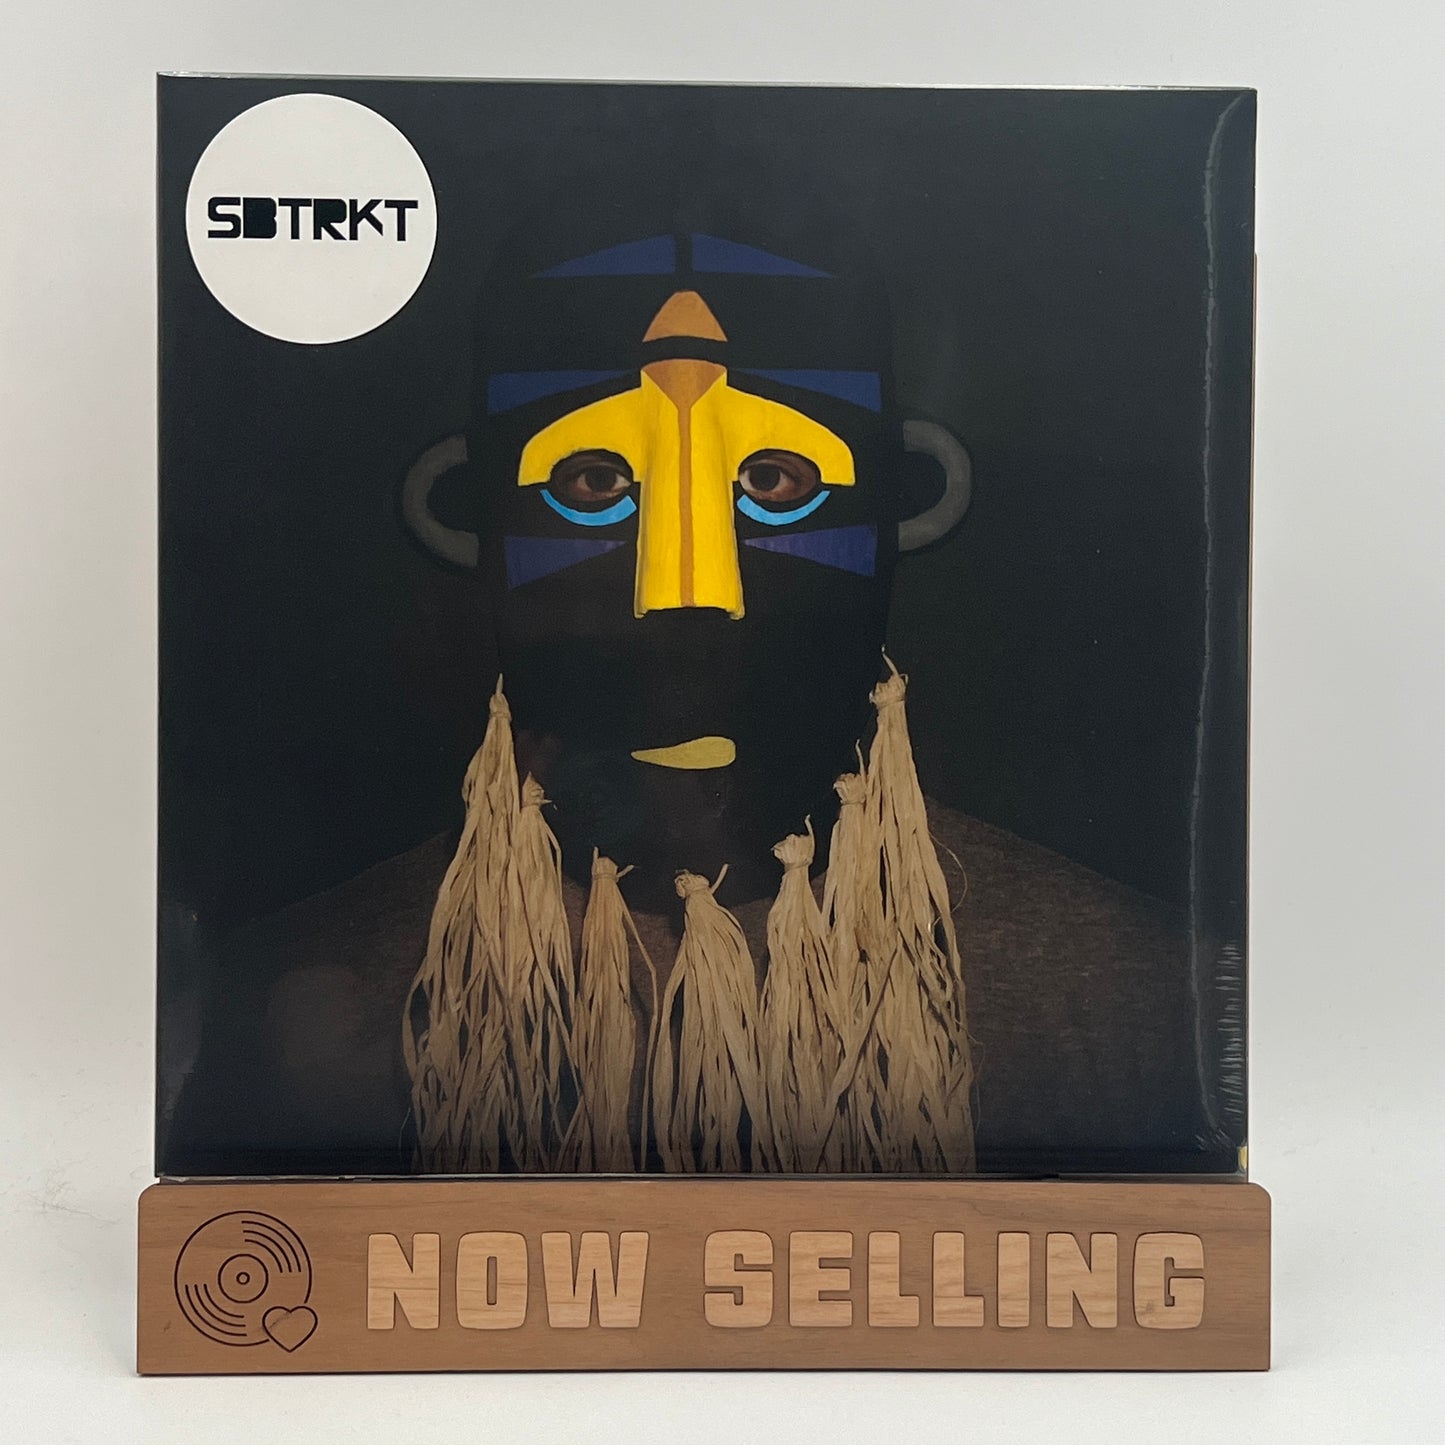 SBTRKT - SBTRKT Self Titled Vinyl LP Reissue SEALED